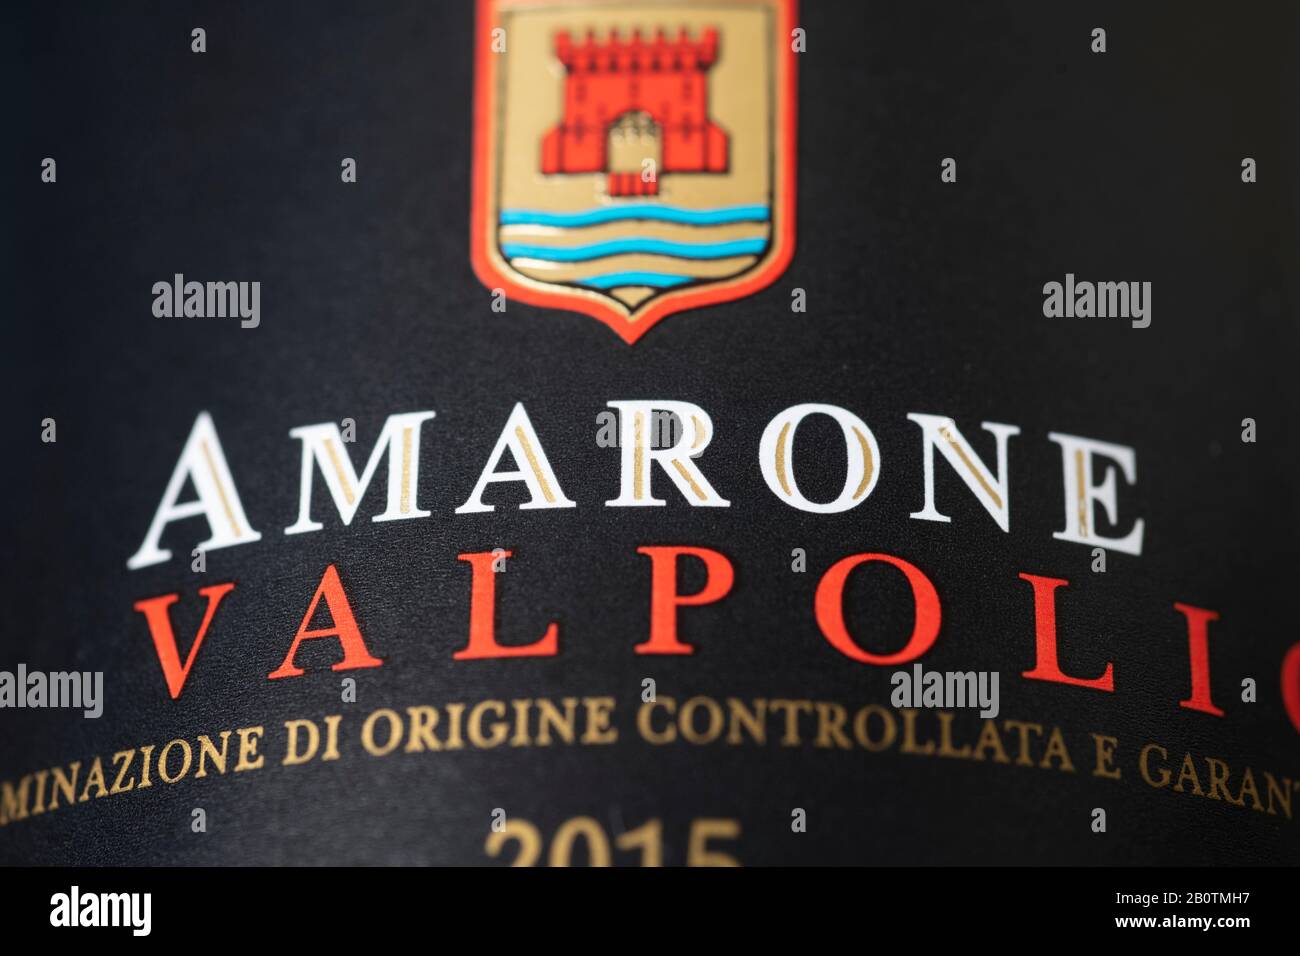 Amarone della Valpolicella wine bottle label, Italy. Credit: Malcolm Park/Alamy. Stock Photo